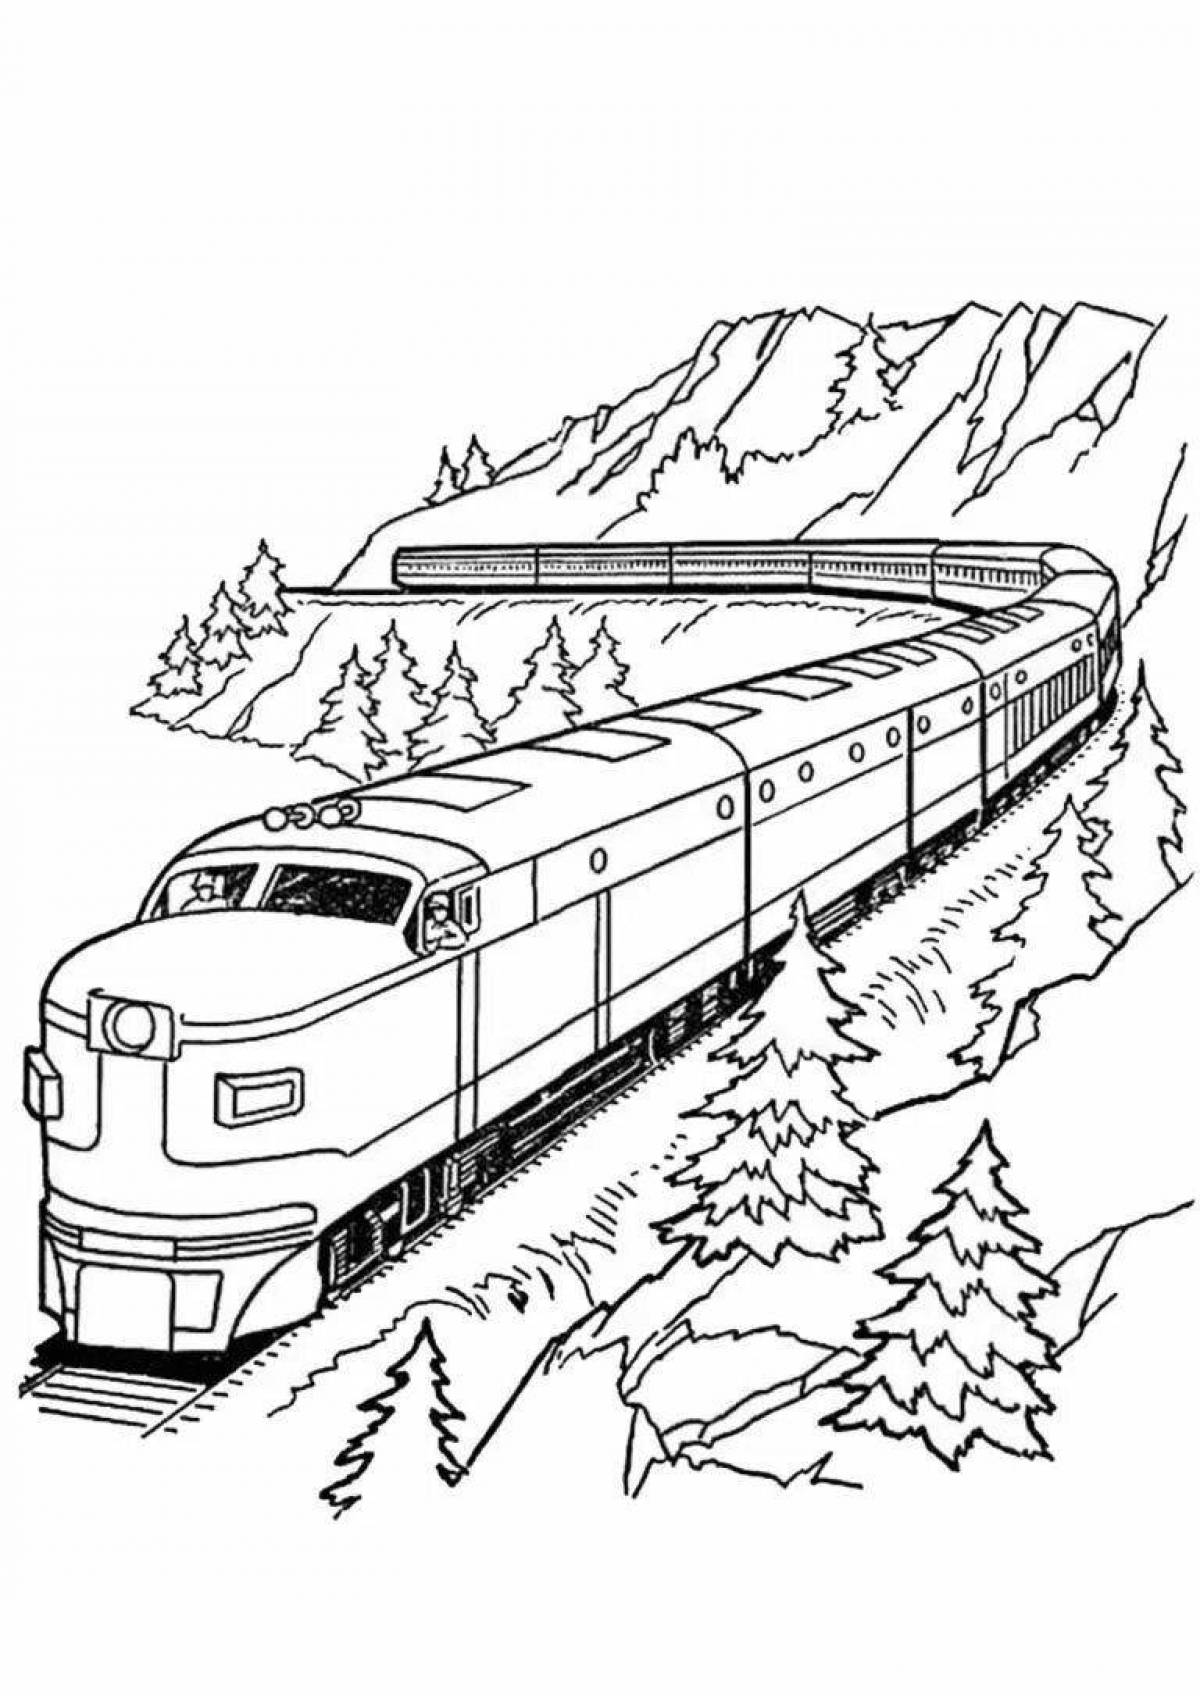 Раскраска - Мультик про паровозики и большие поезда - video Dailymotion